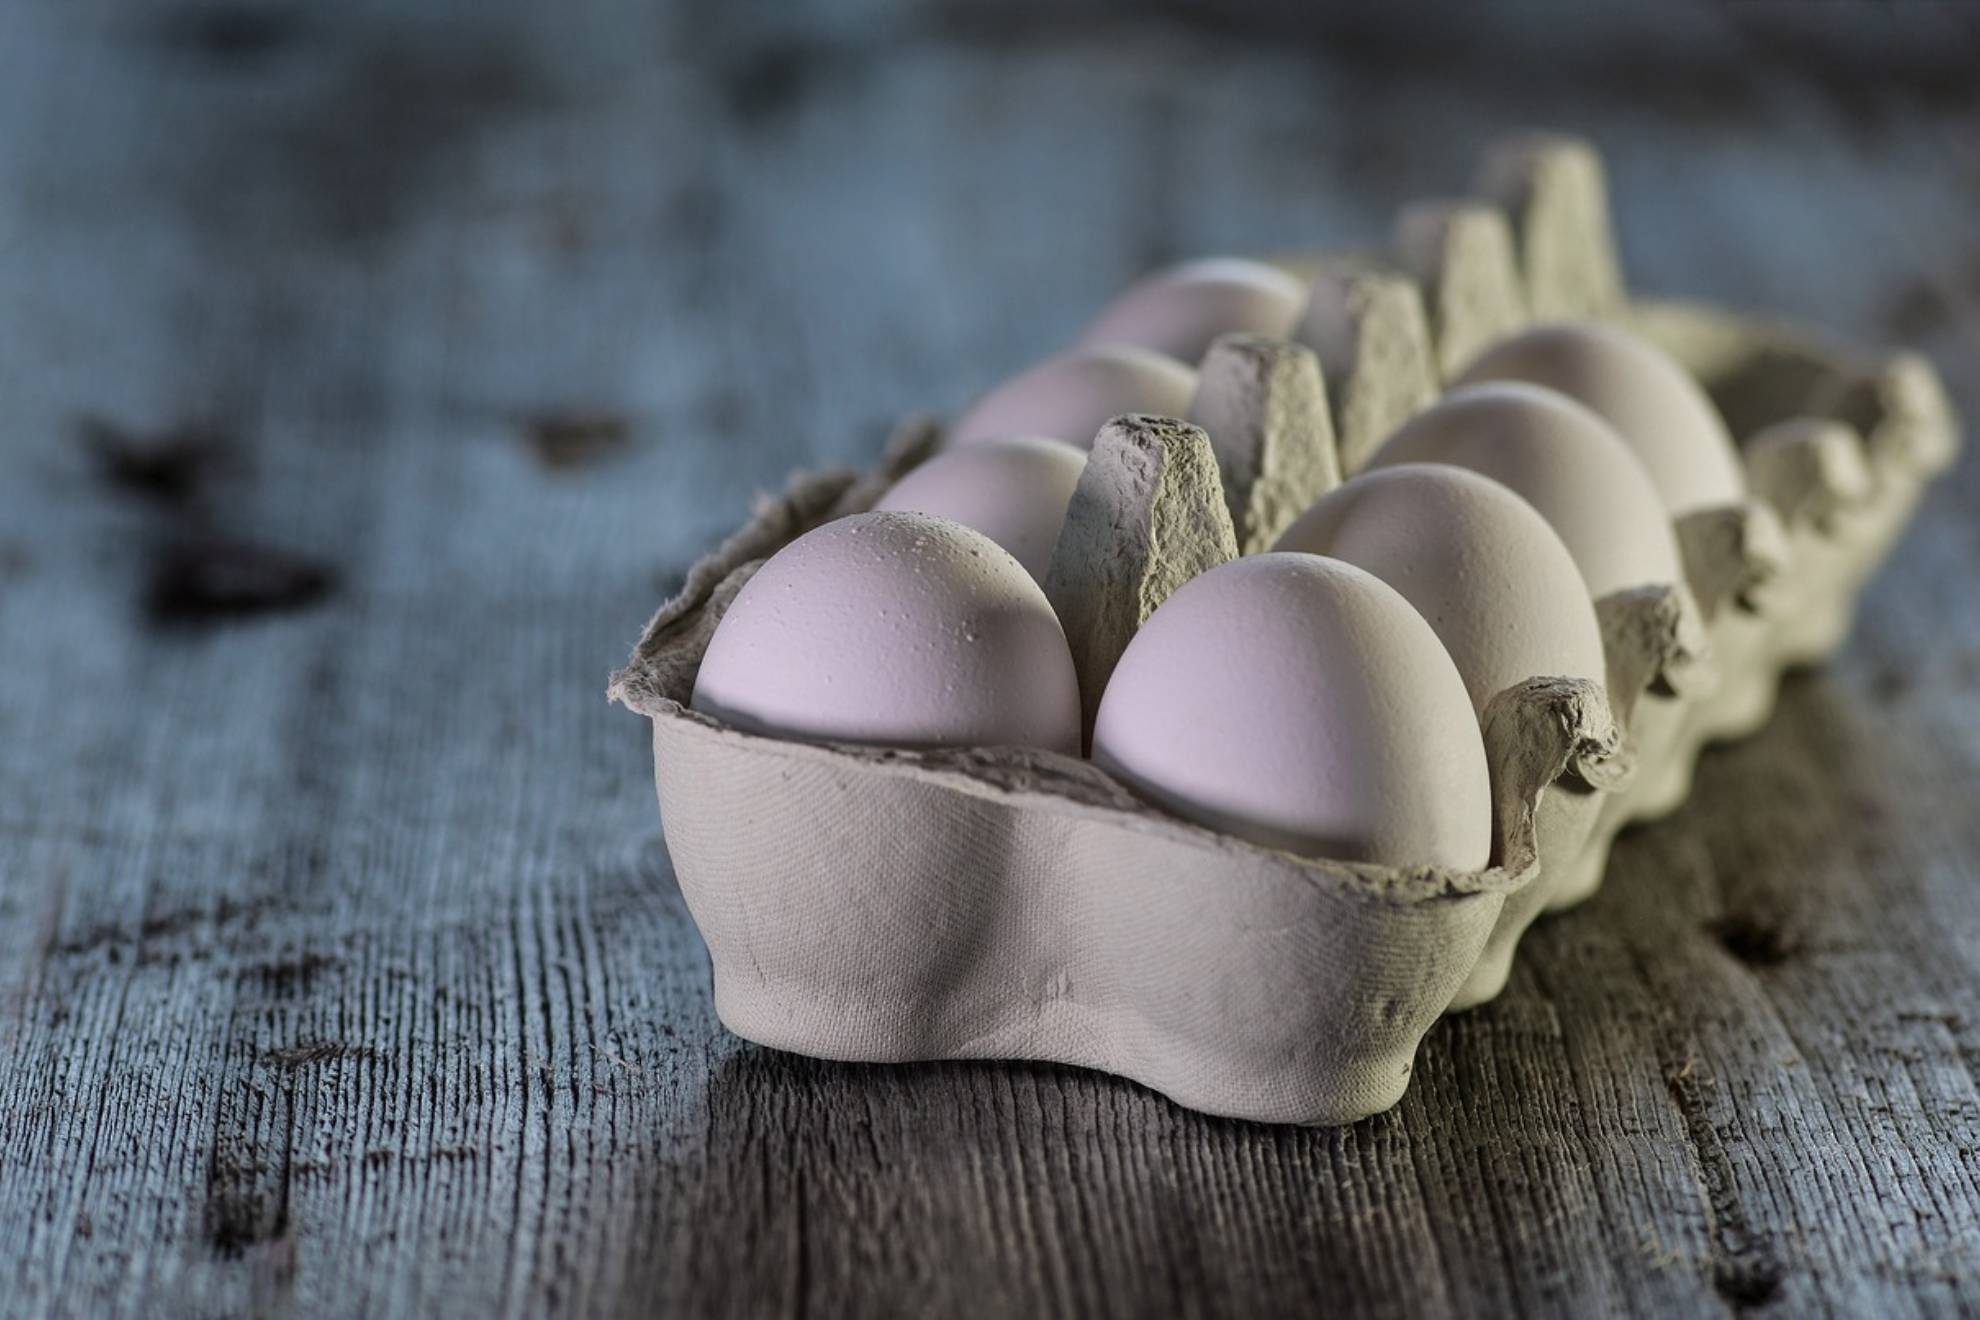 La dieta del huevo duro con la que puedes llegar a perder hasta 10 kilos en dos semanas